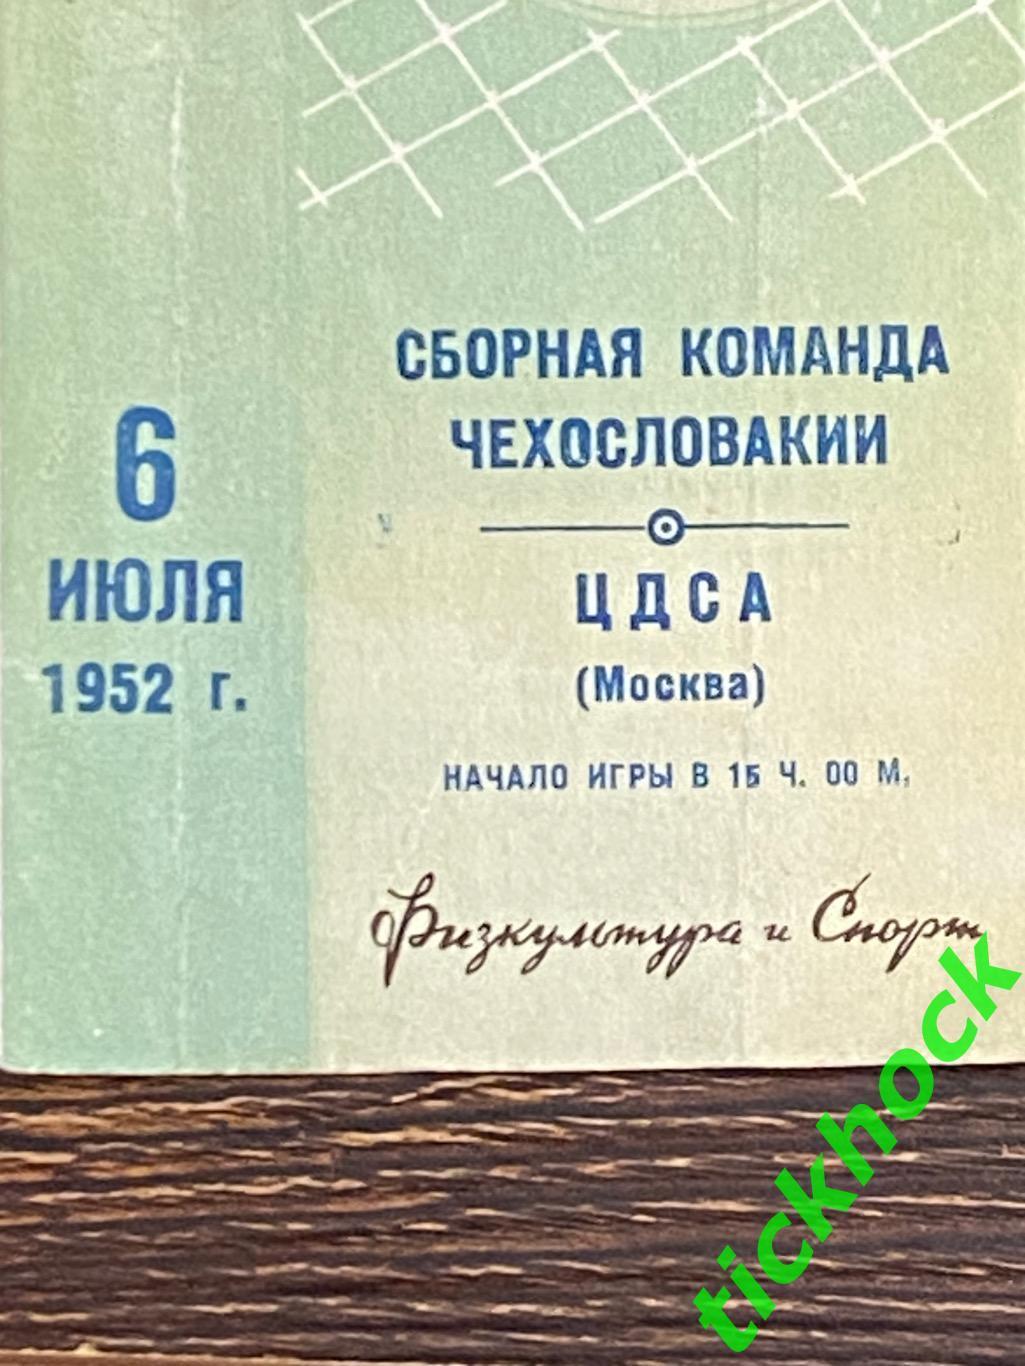 ЦДСА / ЦСКА Москва - Чехословакия сборная - 06.07.1952 МТМ - SY 1